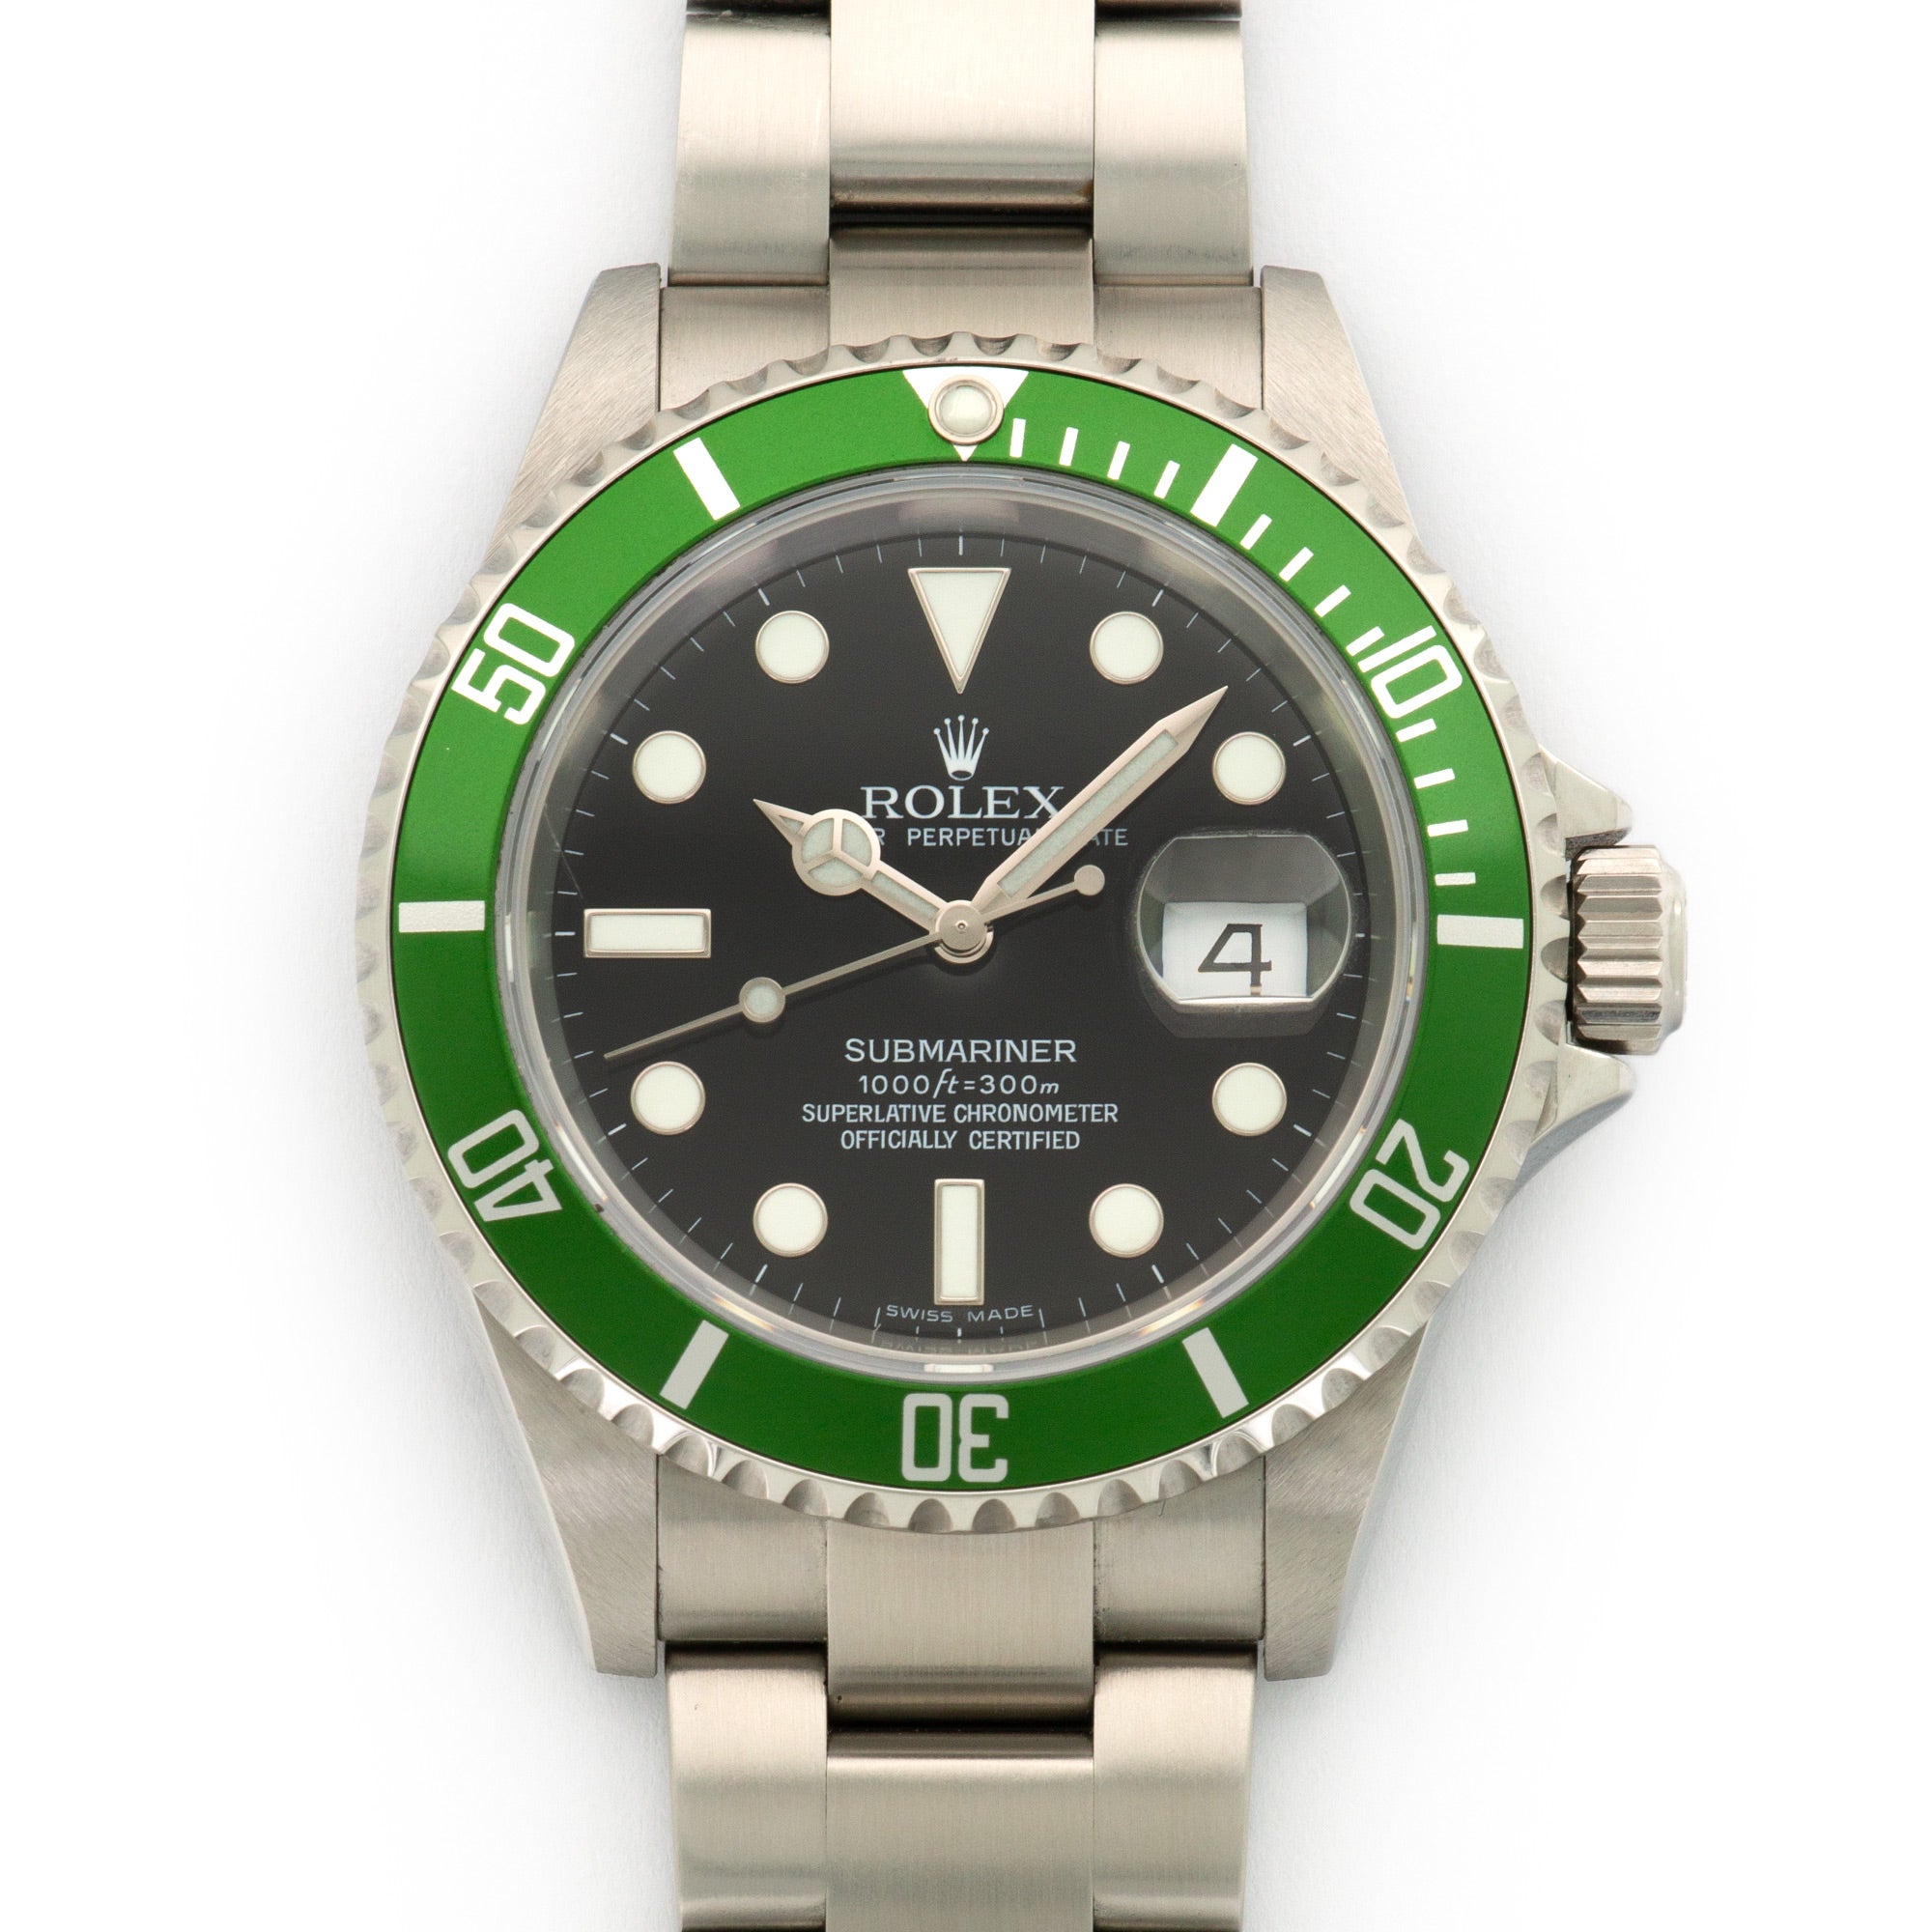 Rolex - Rolex Submariner Anniversary Watch Ref. 16610LV - The Keystone Watches